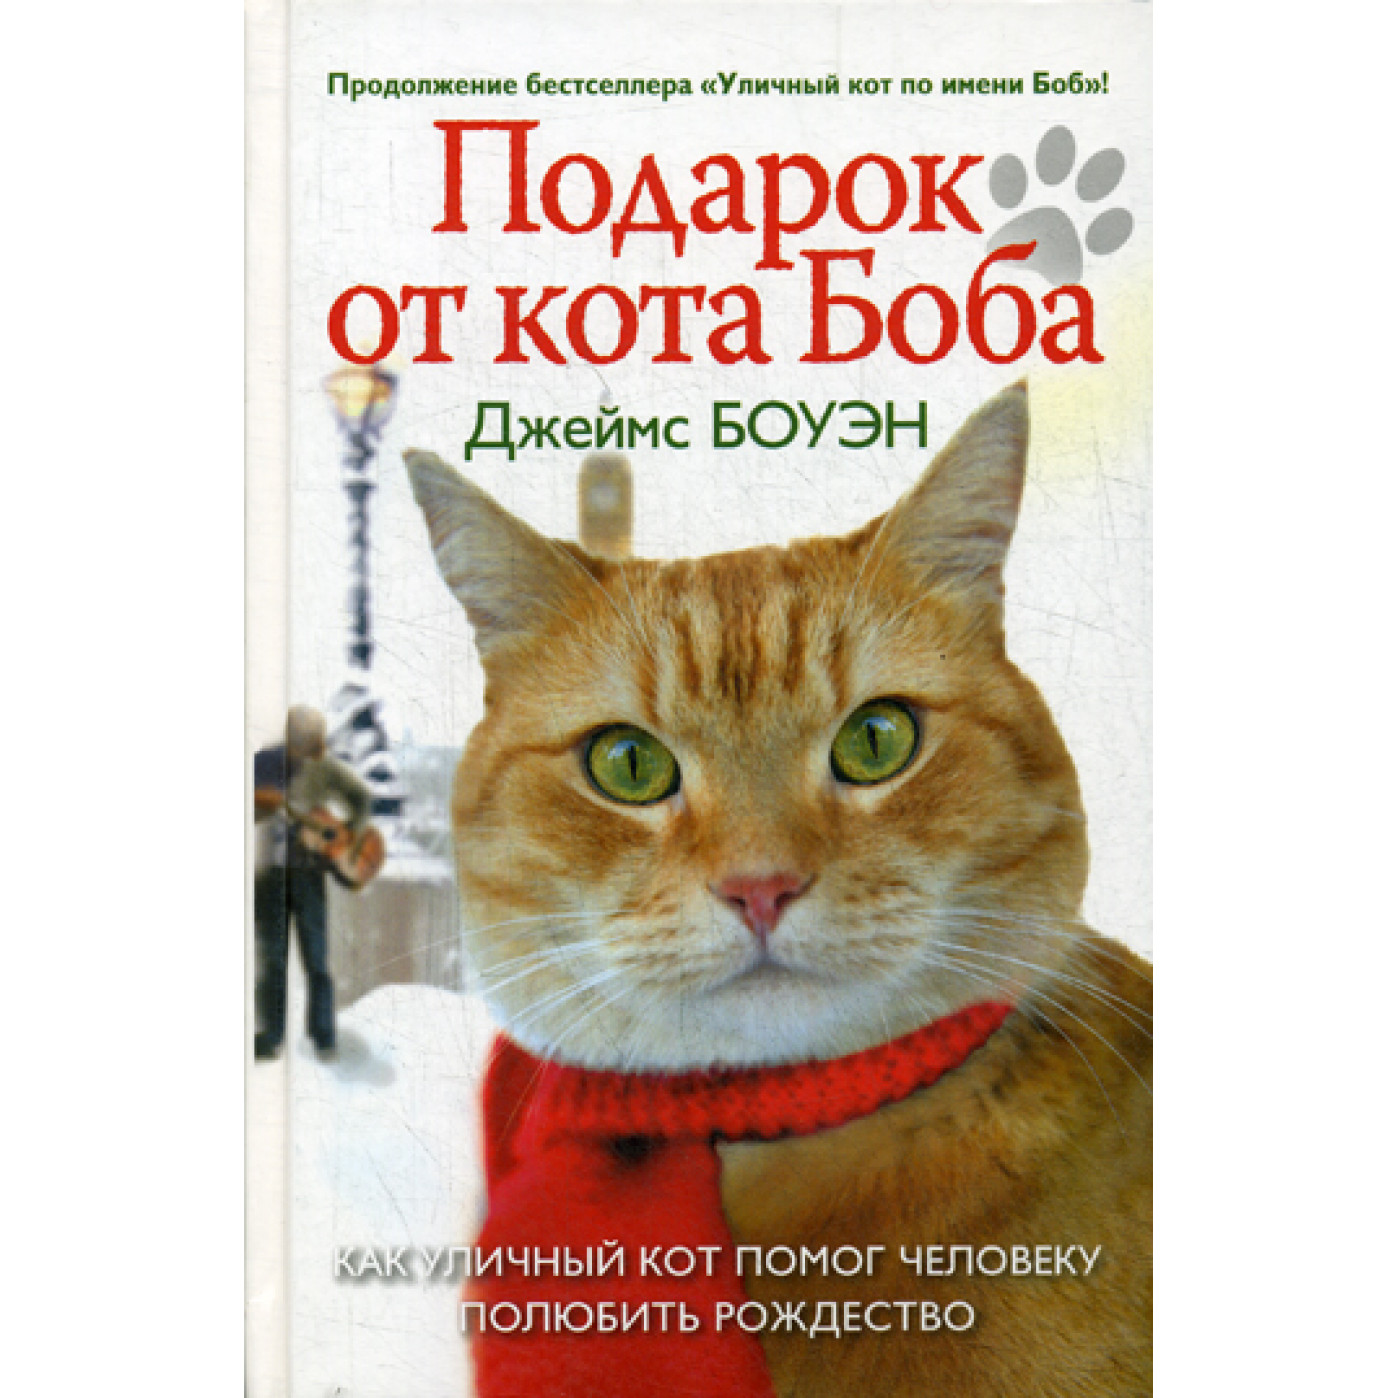 Котомания – интернет-магазин подарков с котами